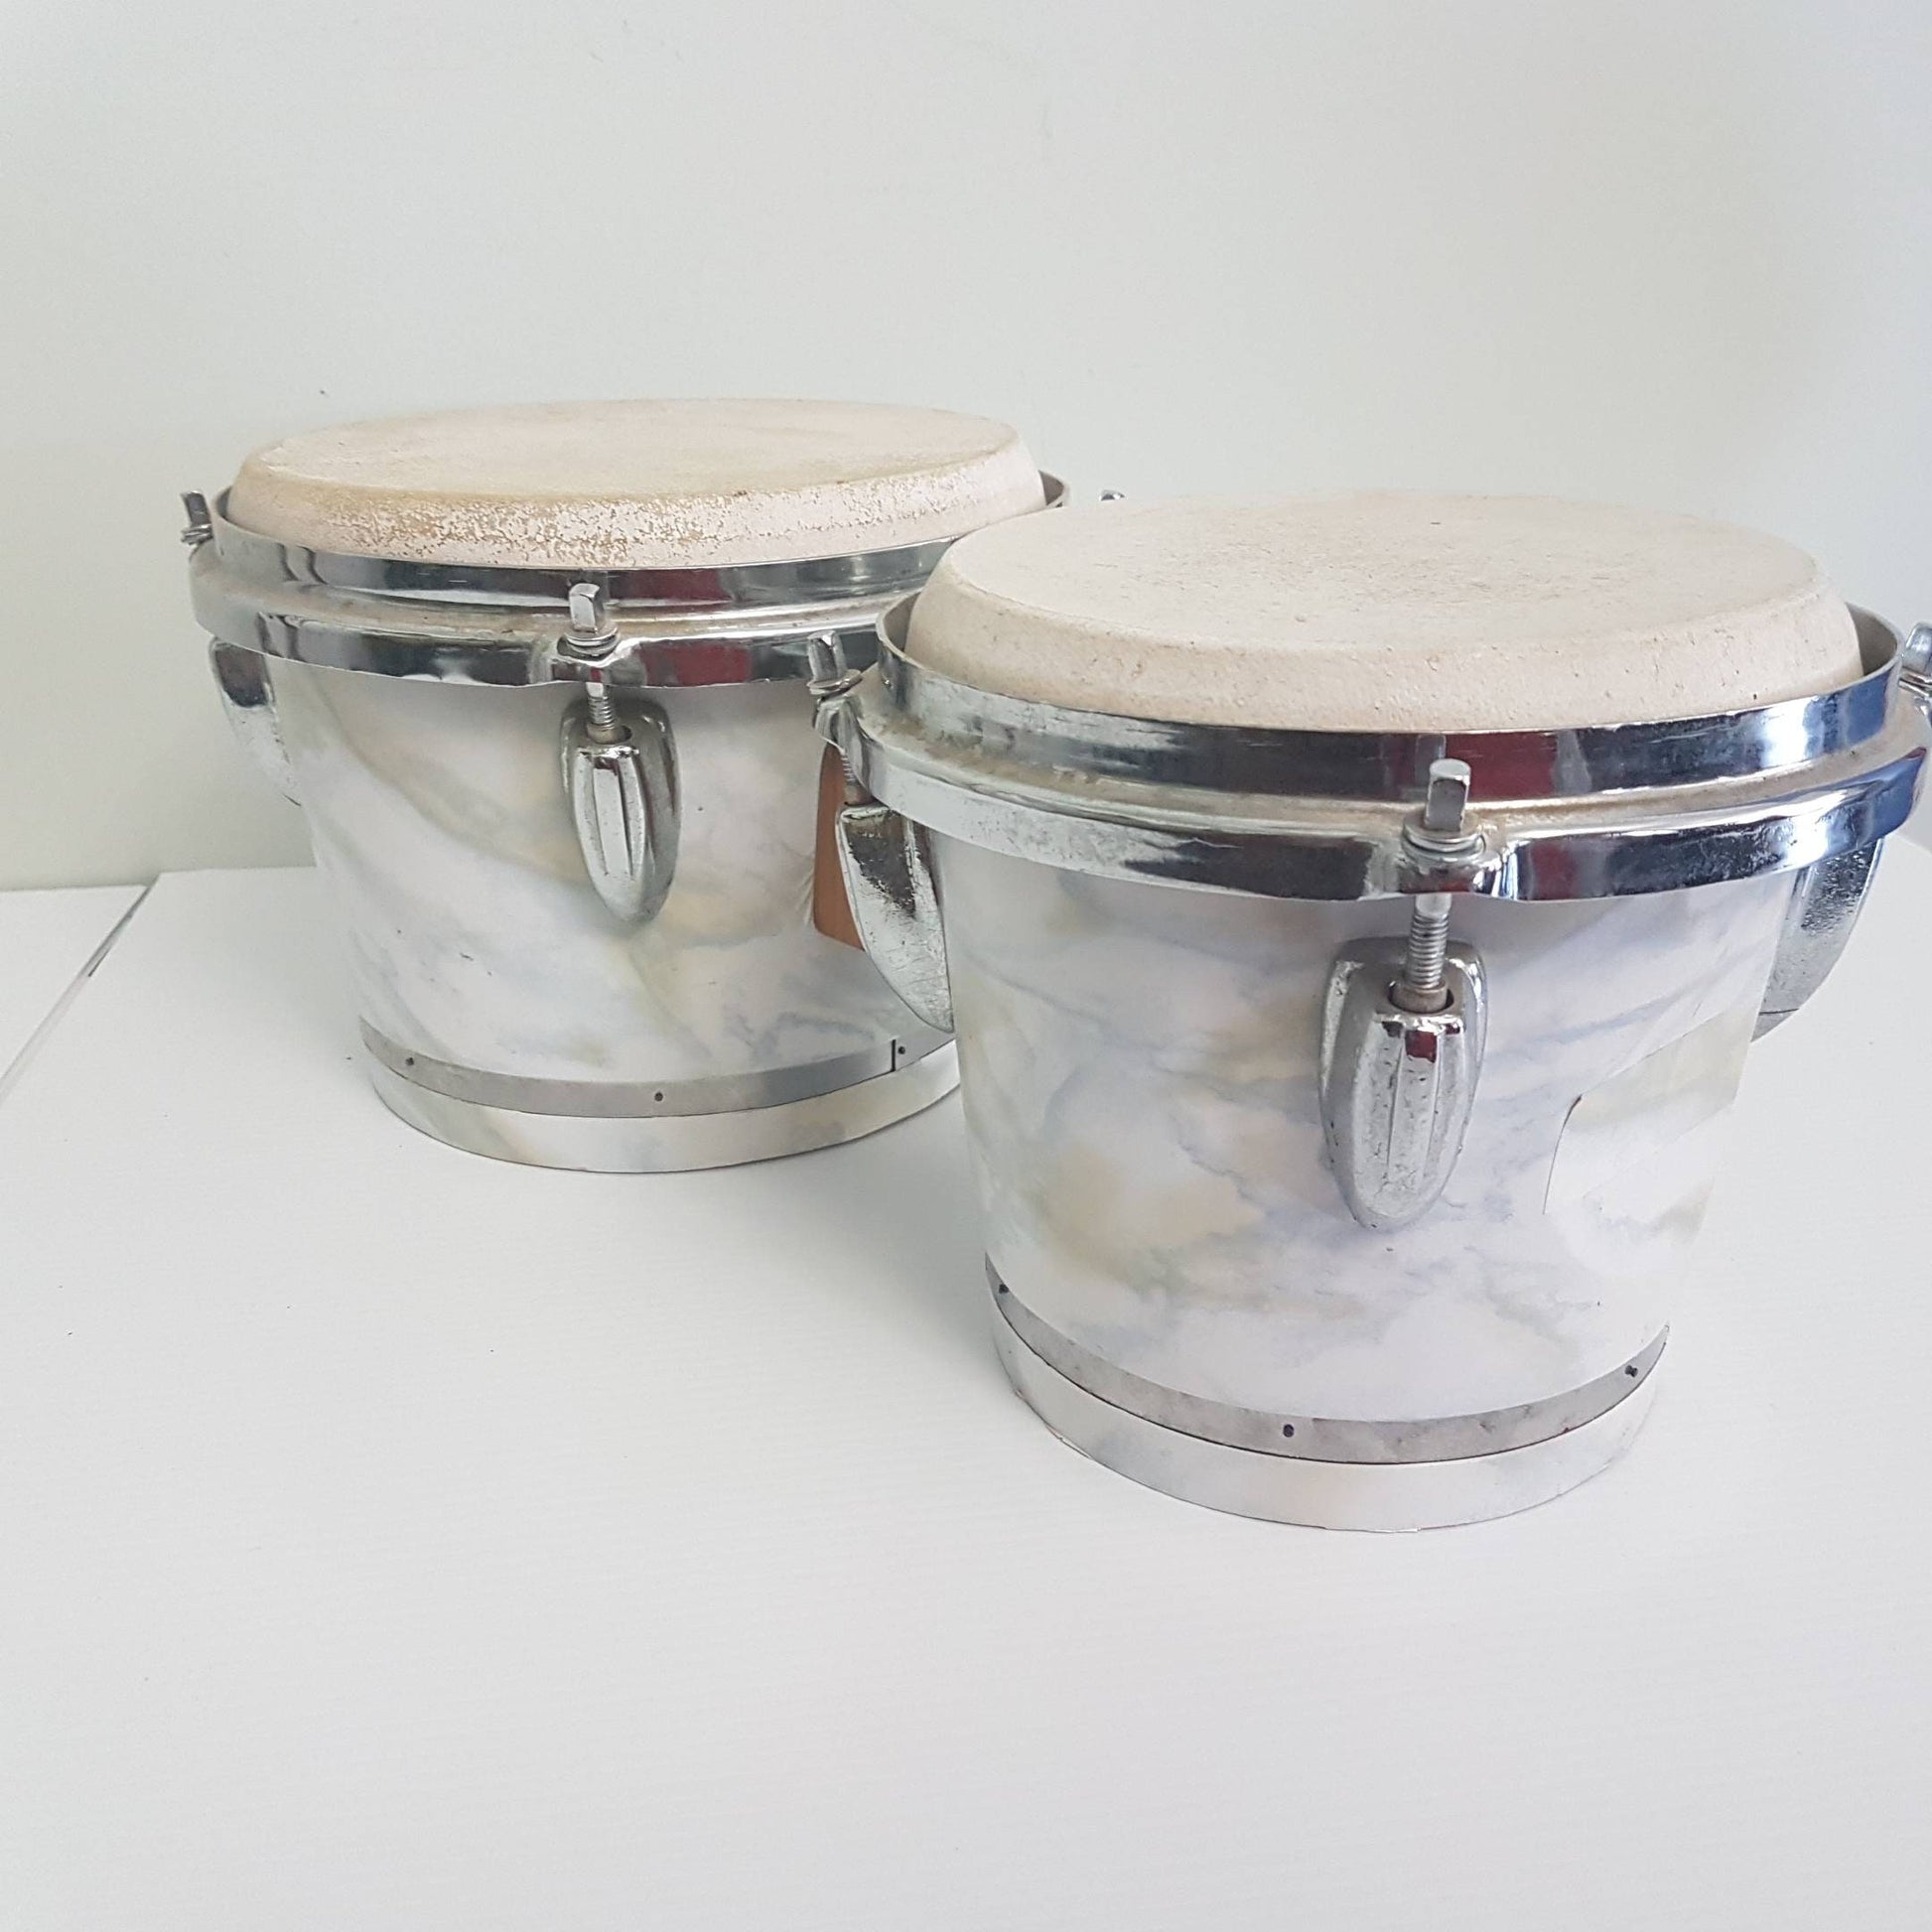 drum tam tam tambourine percussion instrument